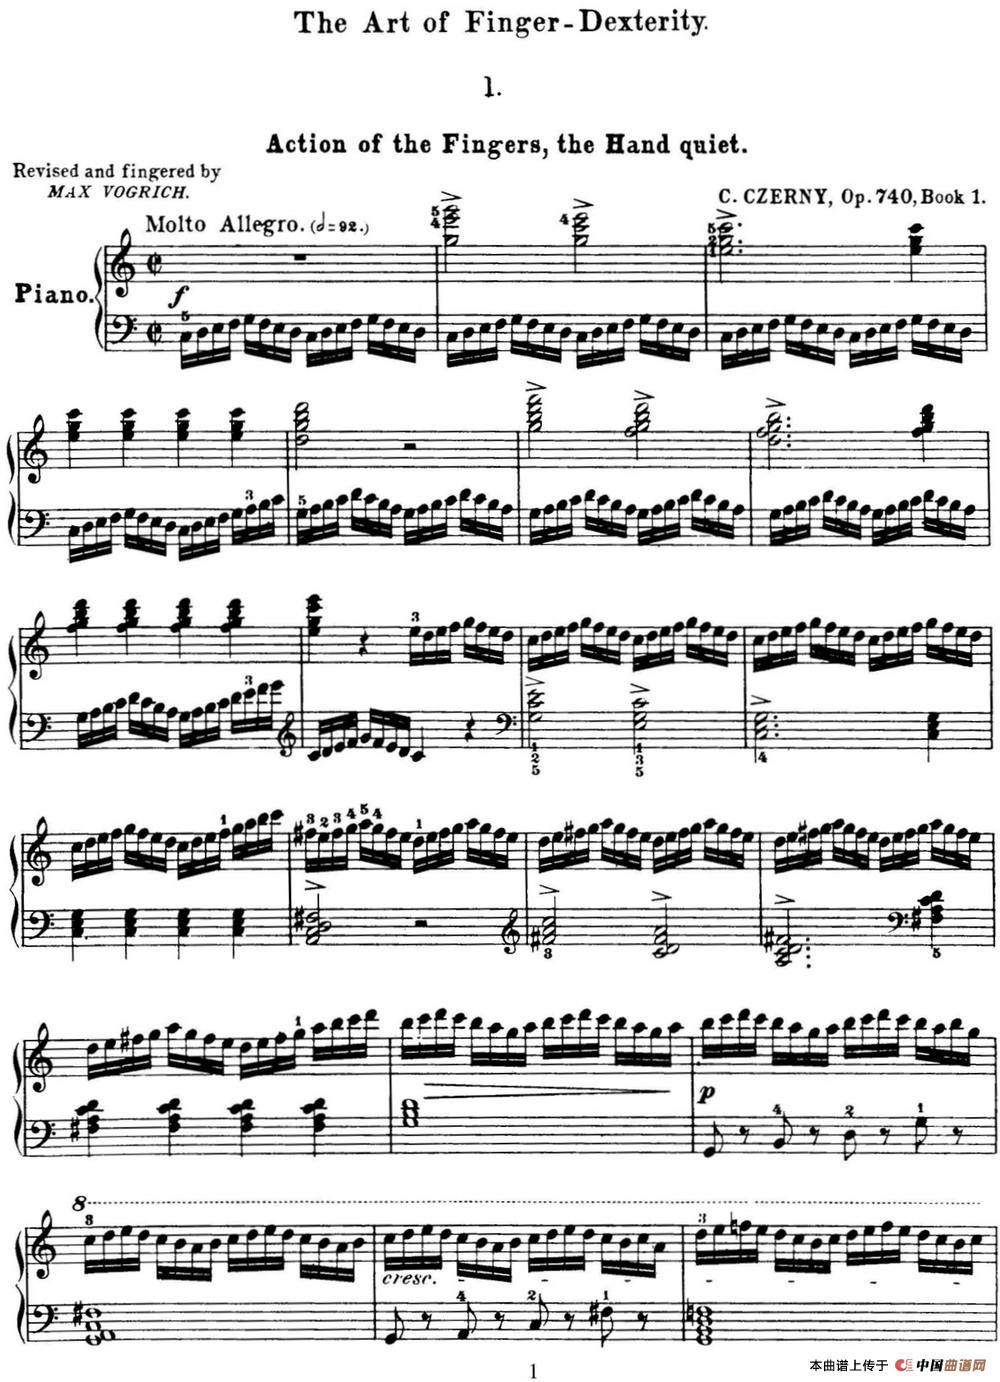 50首车尔尼Op.740钢琴手指灵巧技术练习曲（NO.1）(1)_C740_页面_001.jpg